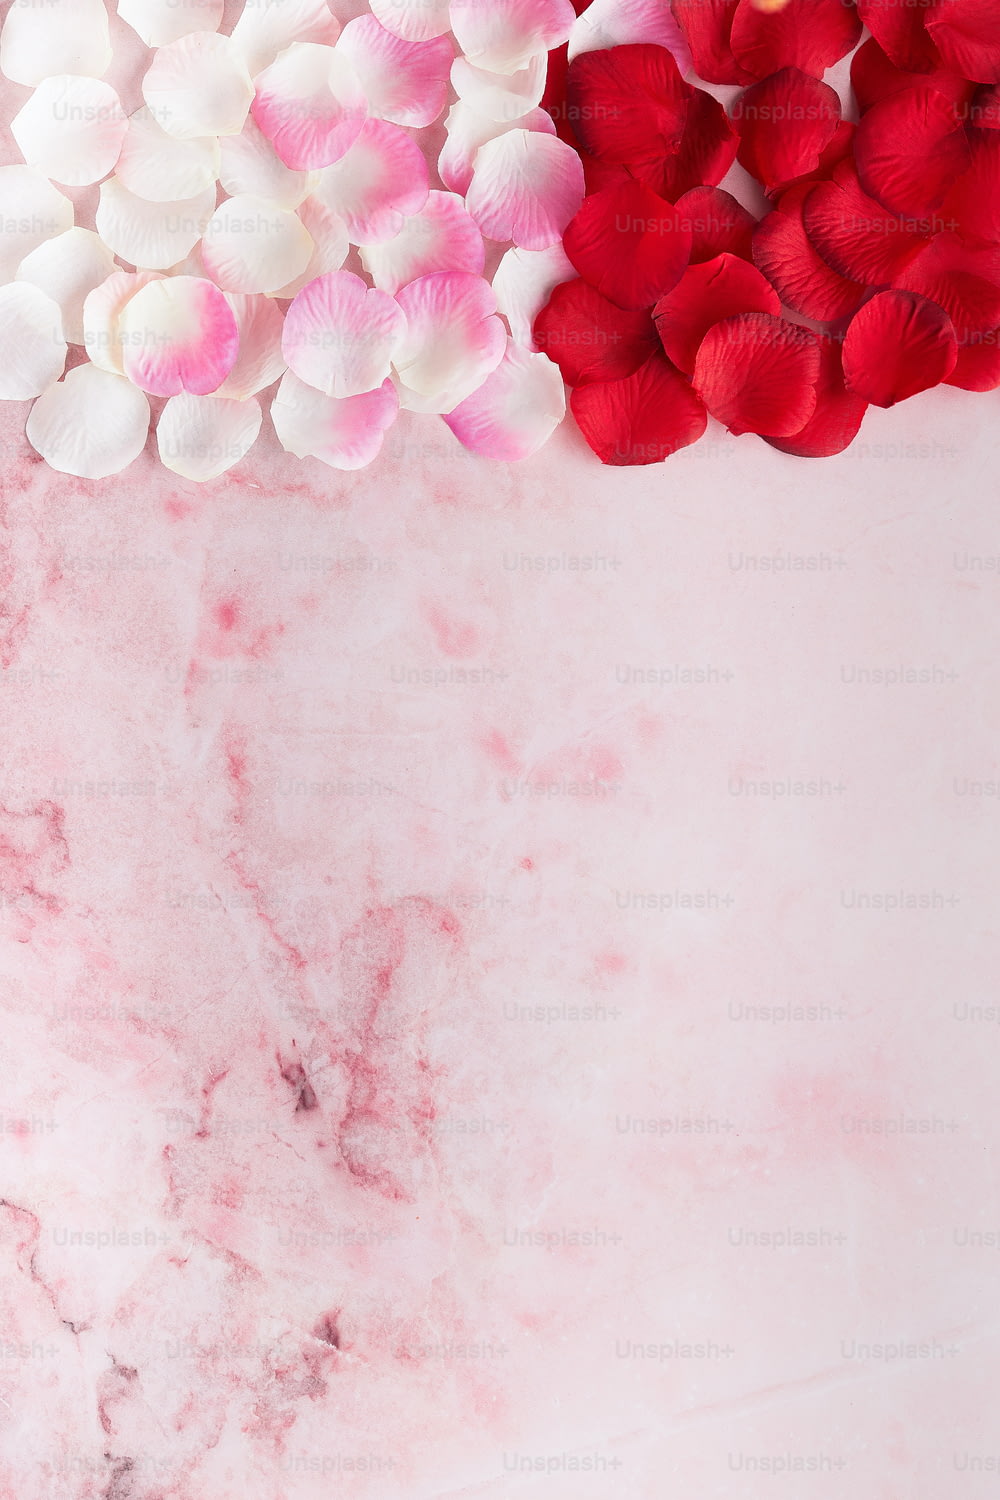 um fundo de mármore rosa com flores vermelhas e brancas